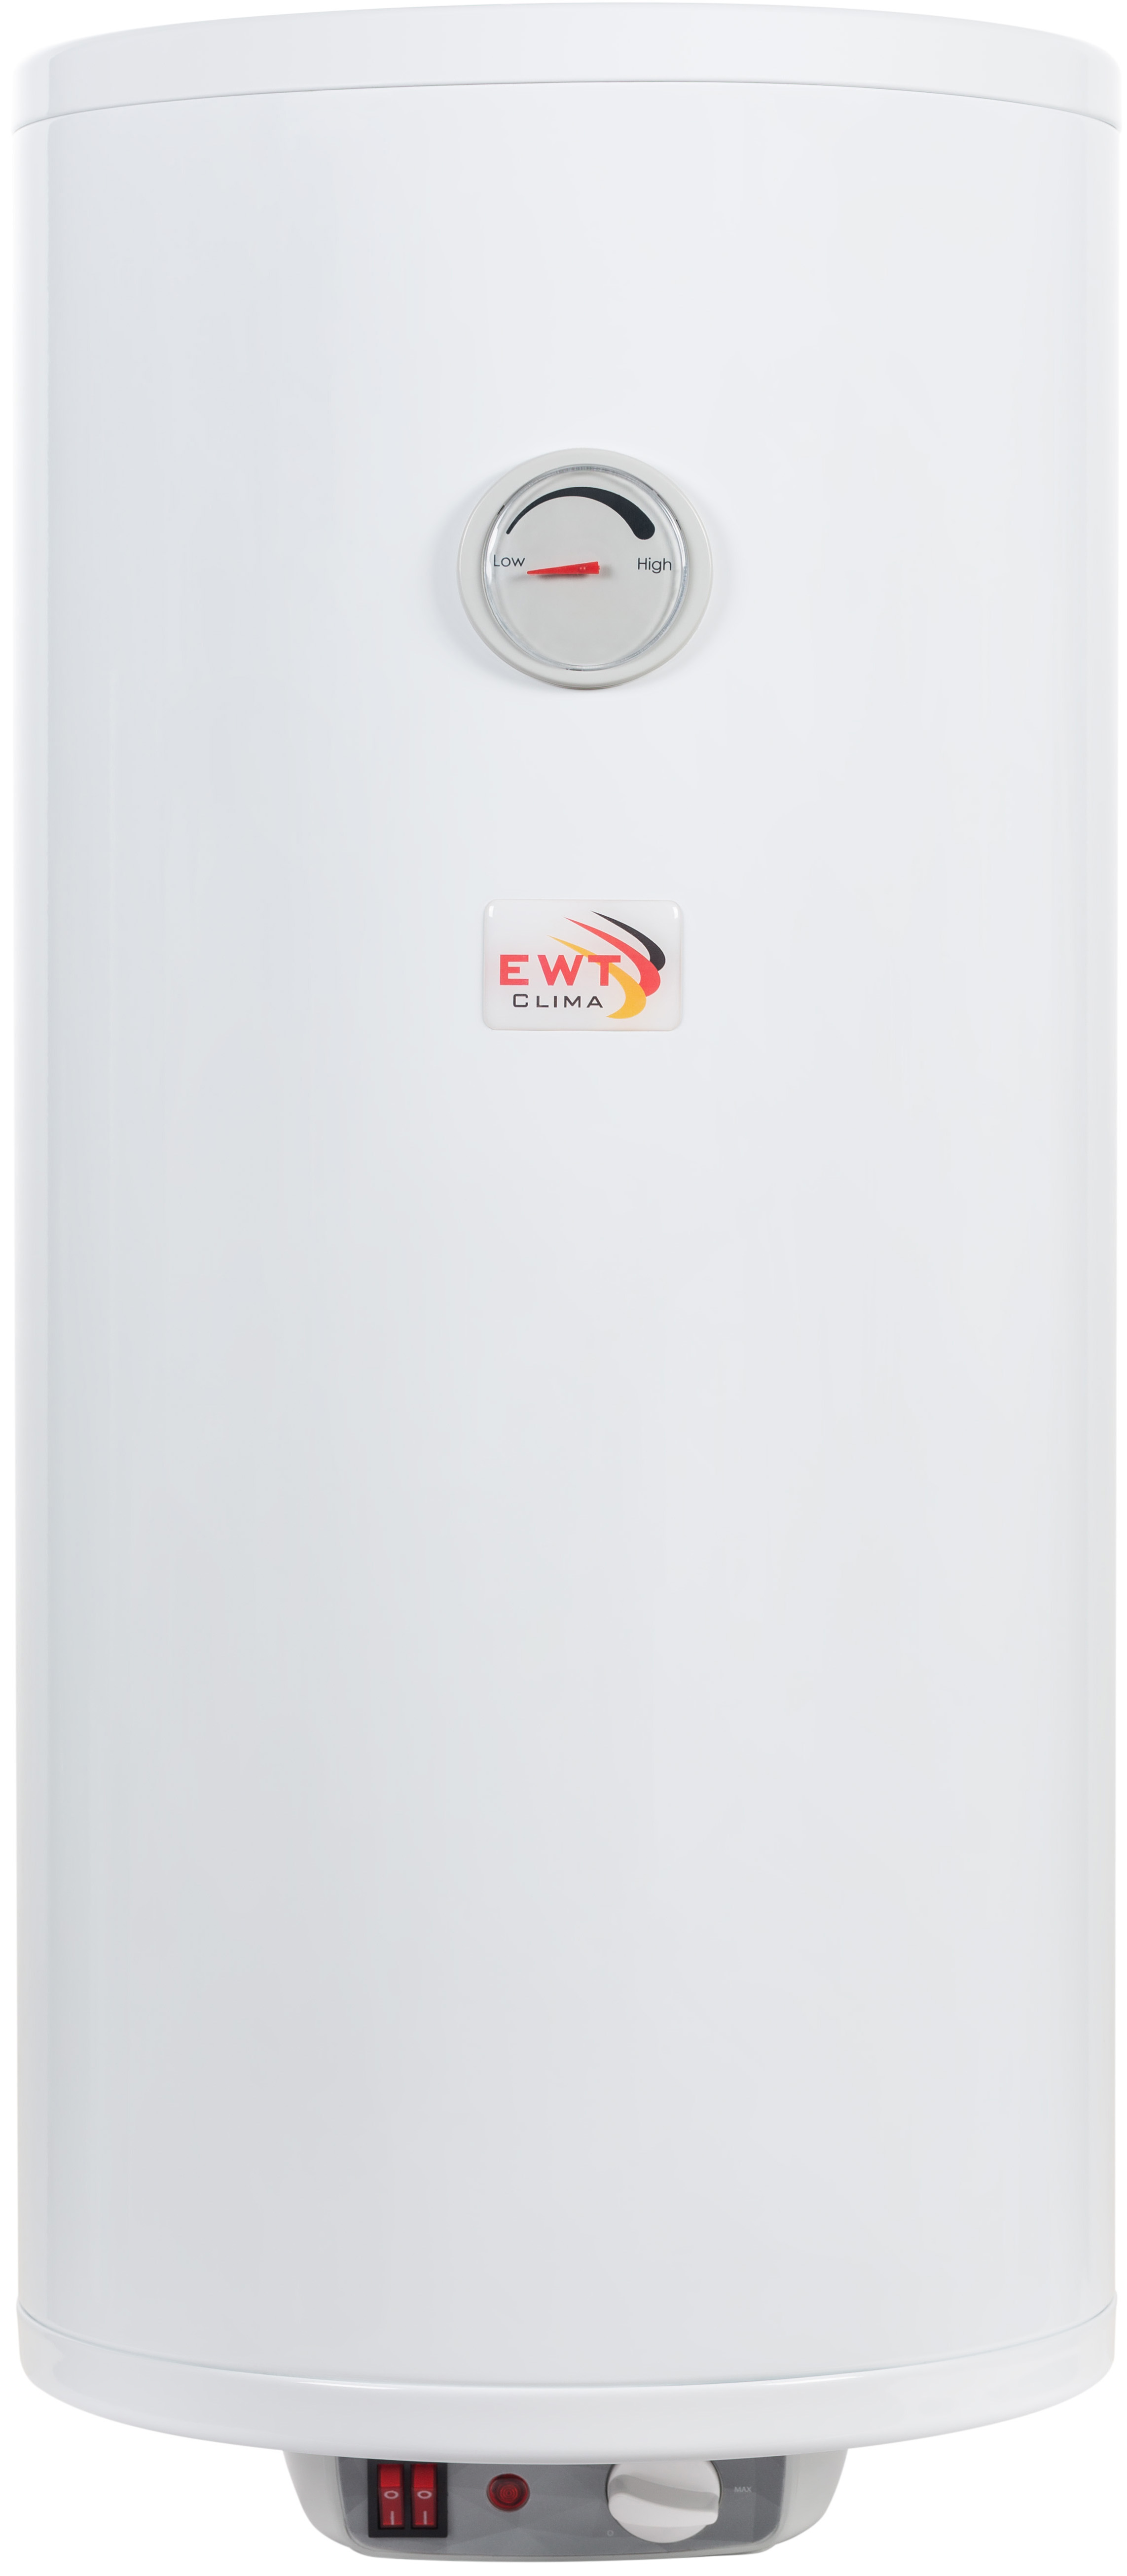 Бойлер EWT Clima Runde Dry Slim AWH/M 80 V